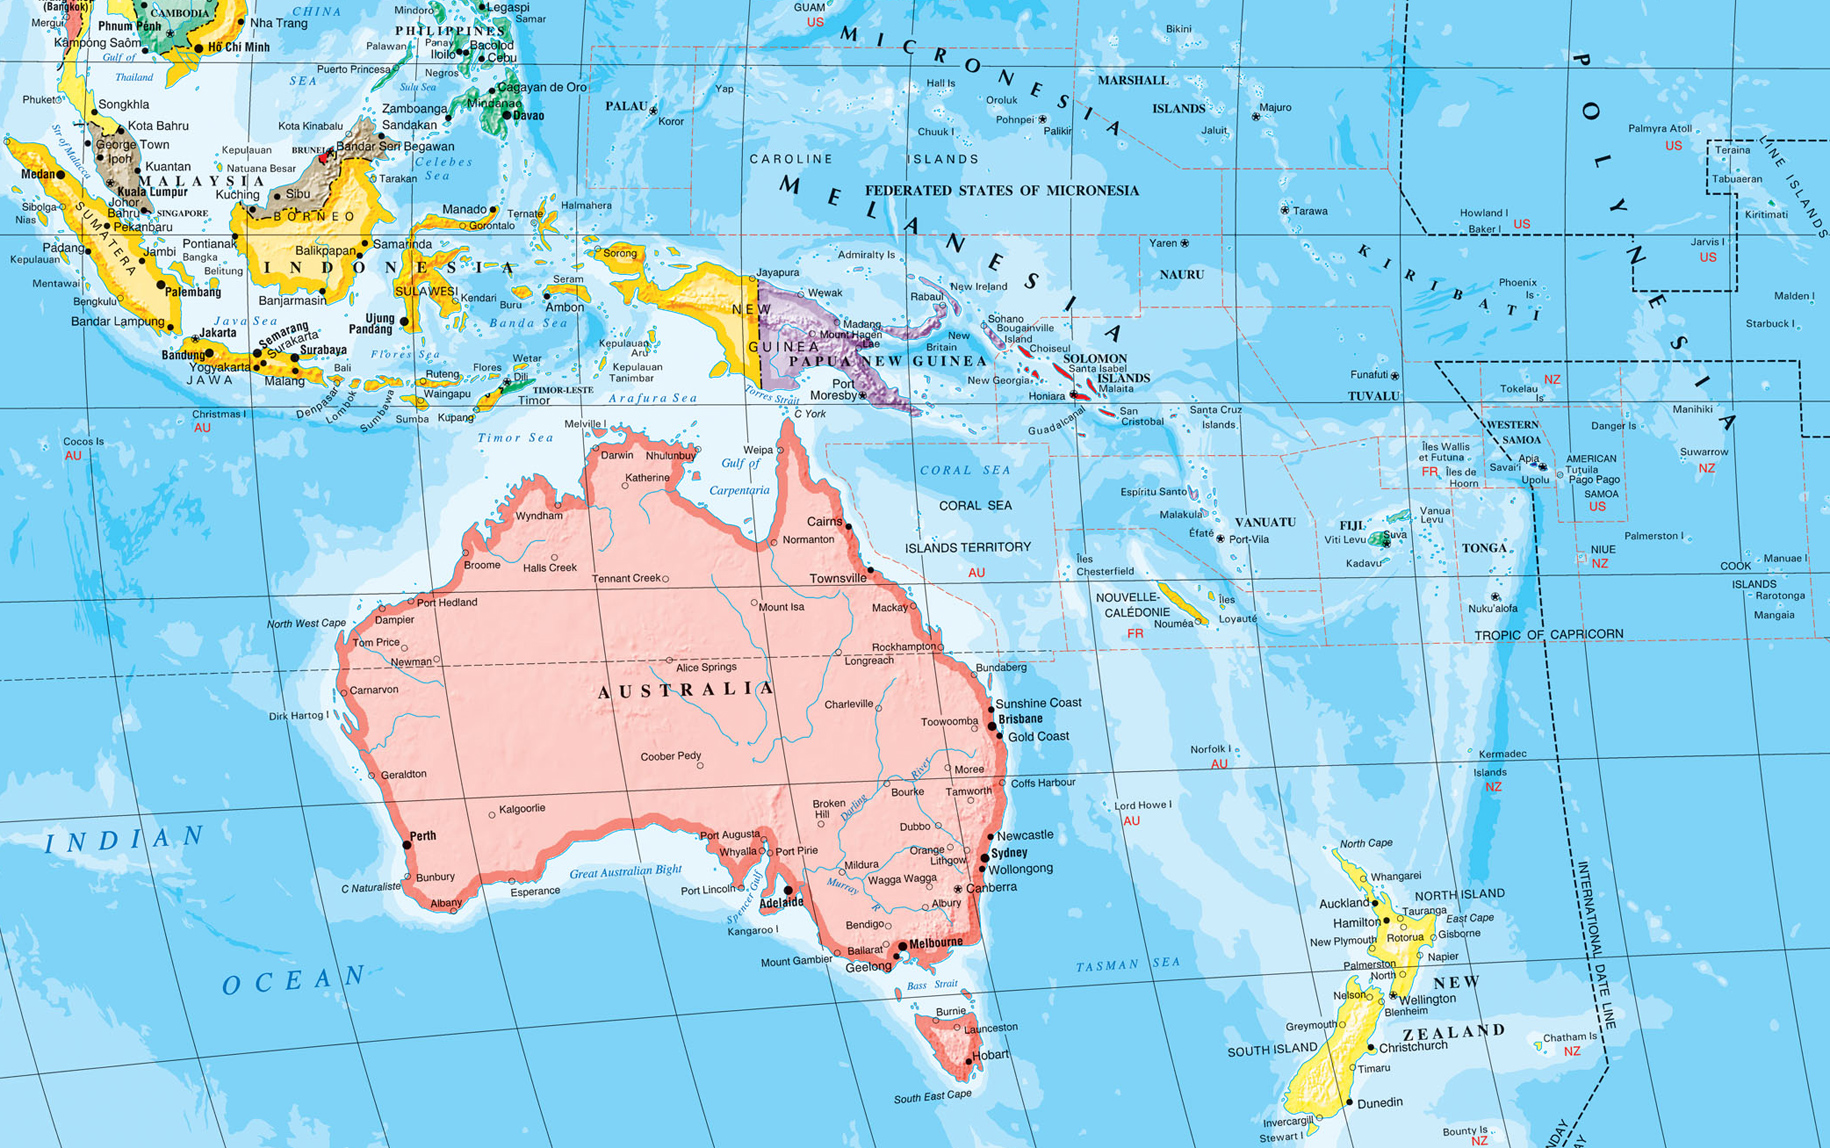 Mapa da Oceania - Austrália e Nova Zelândia